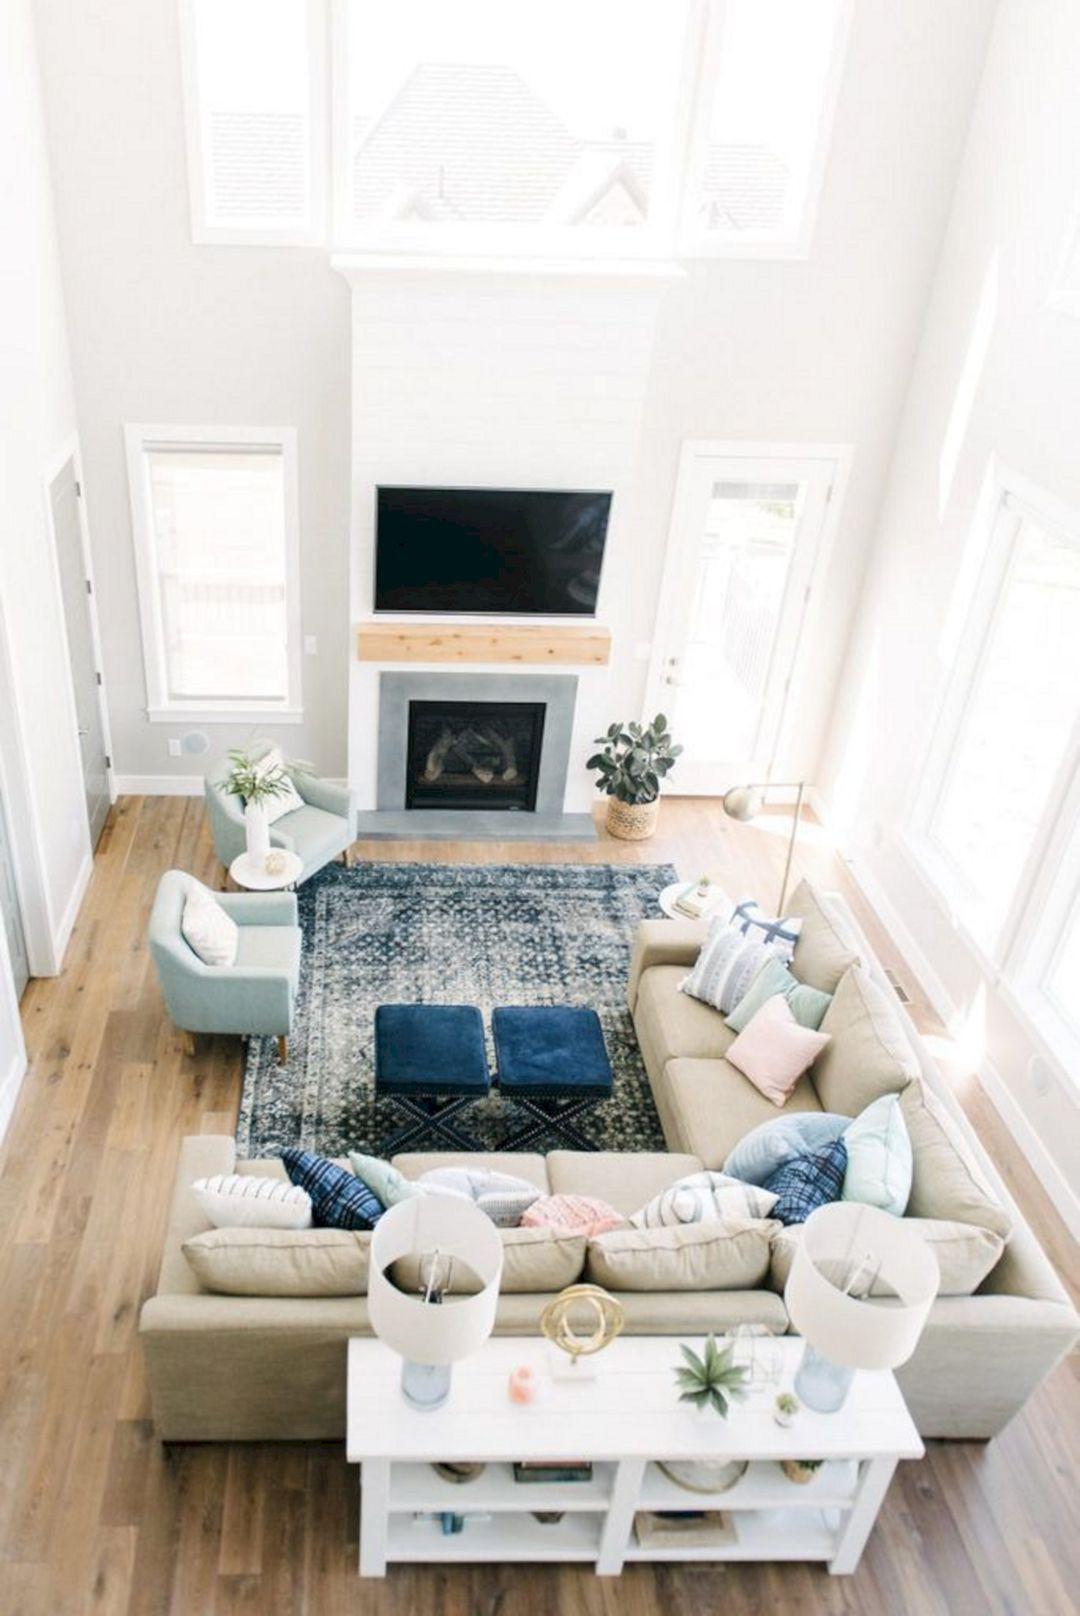 21 Unique Small Living Room Setups - Home Decoration and Inspiration Ideas